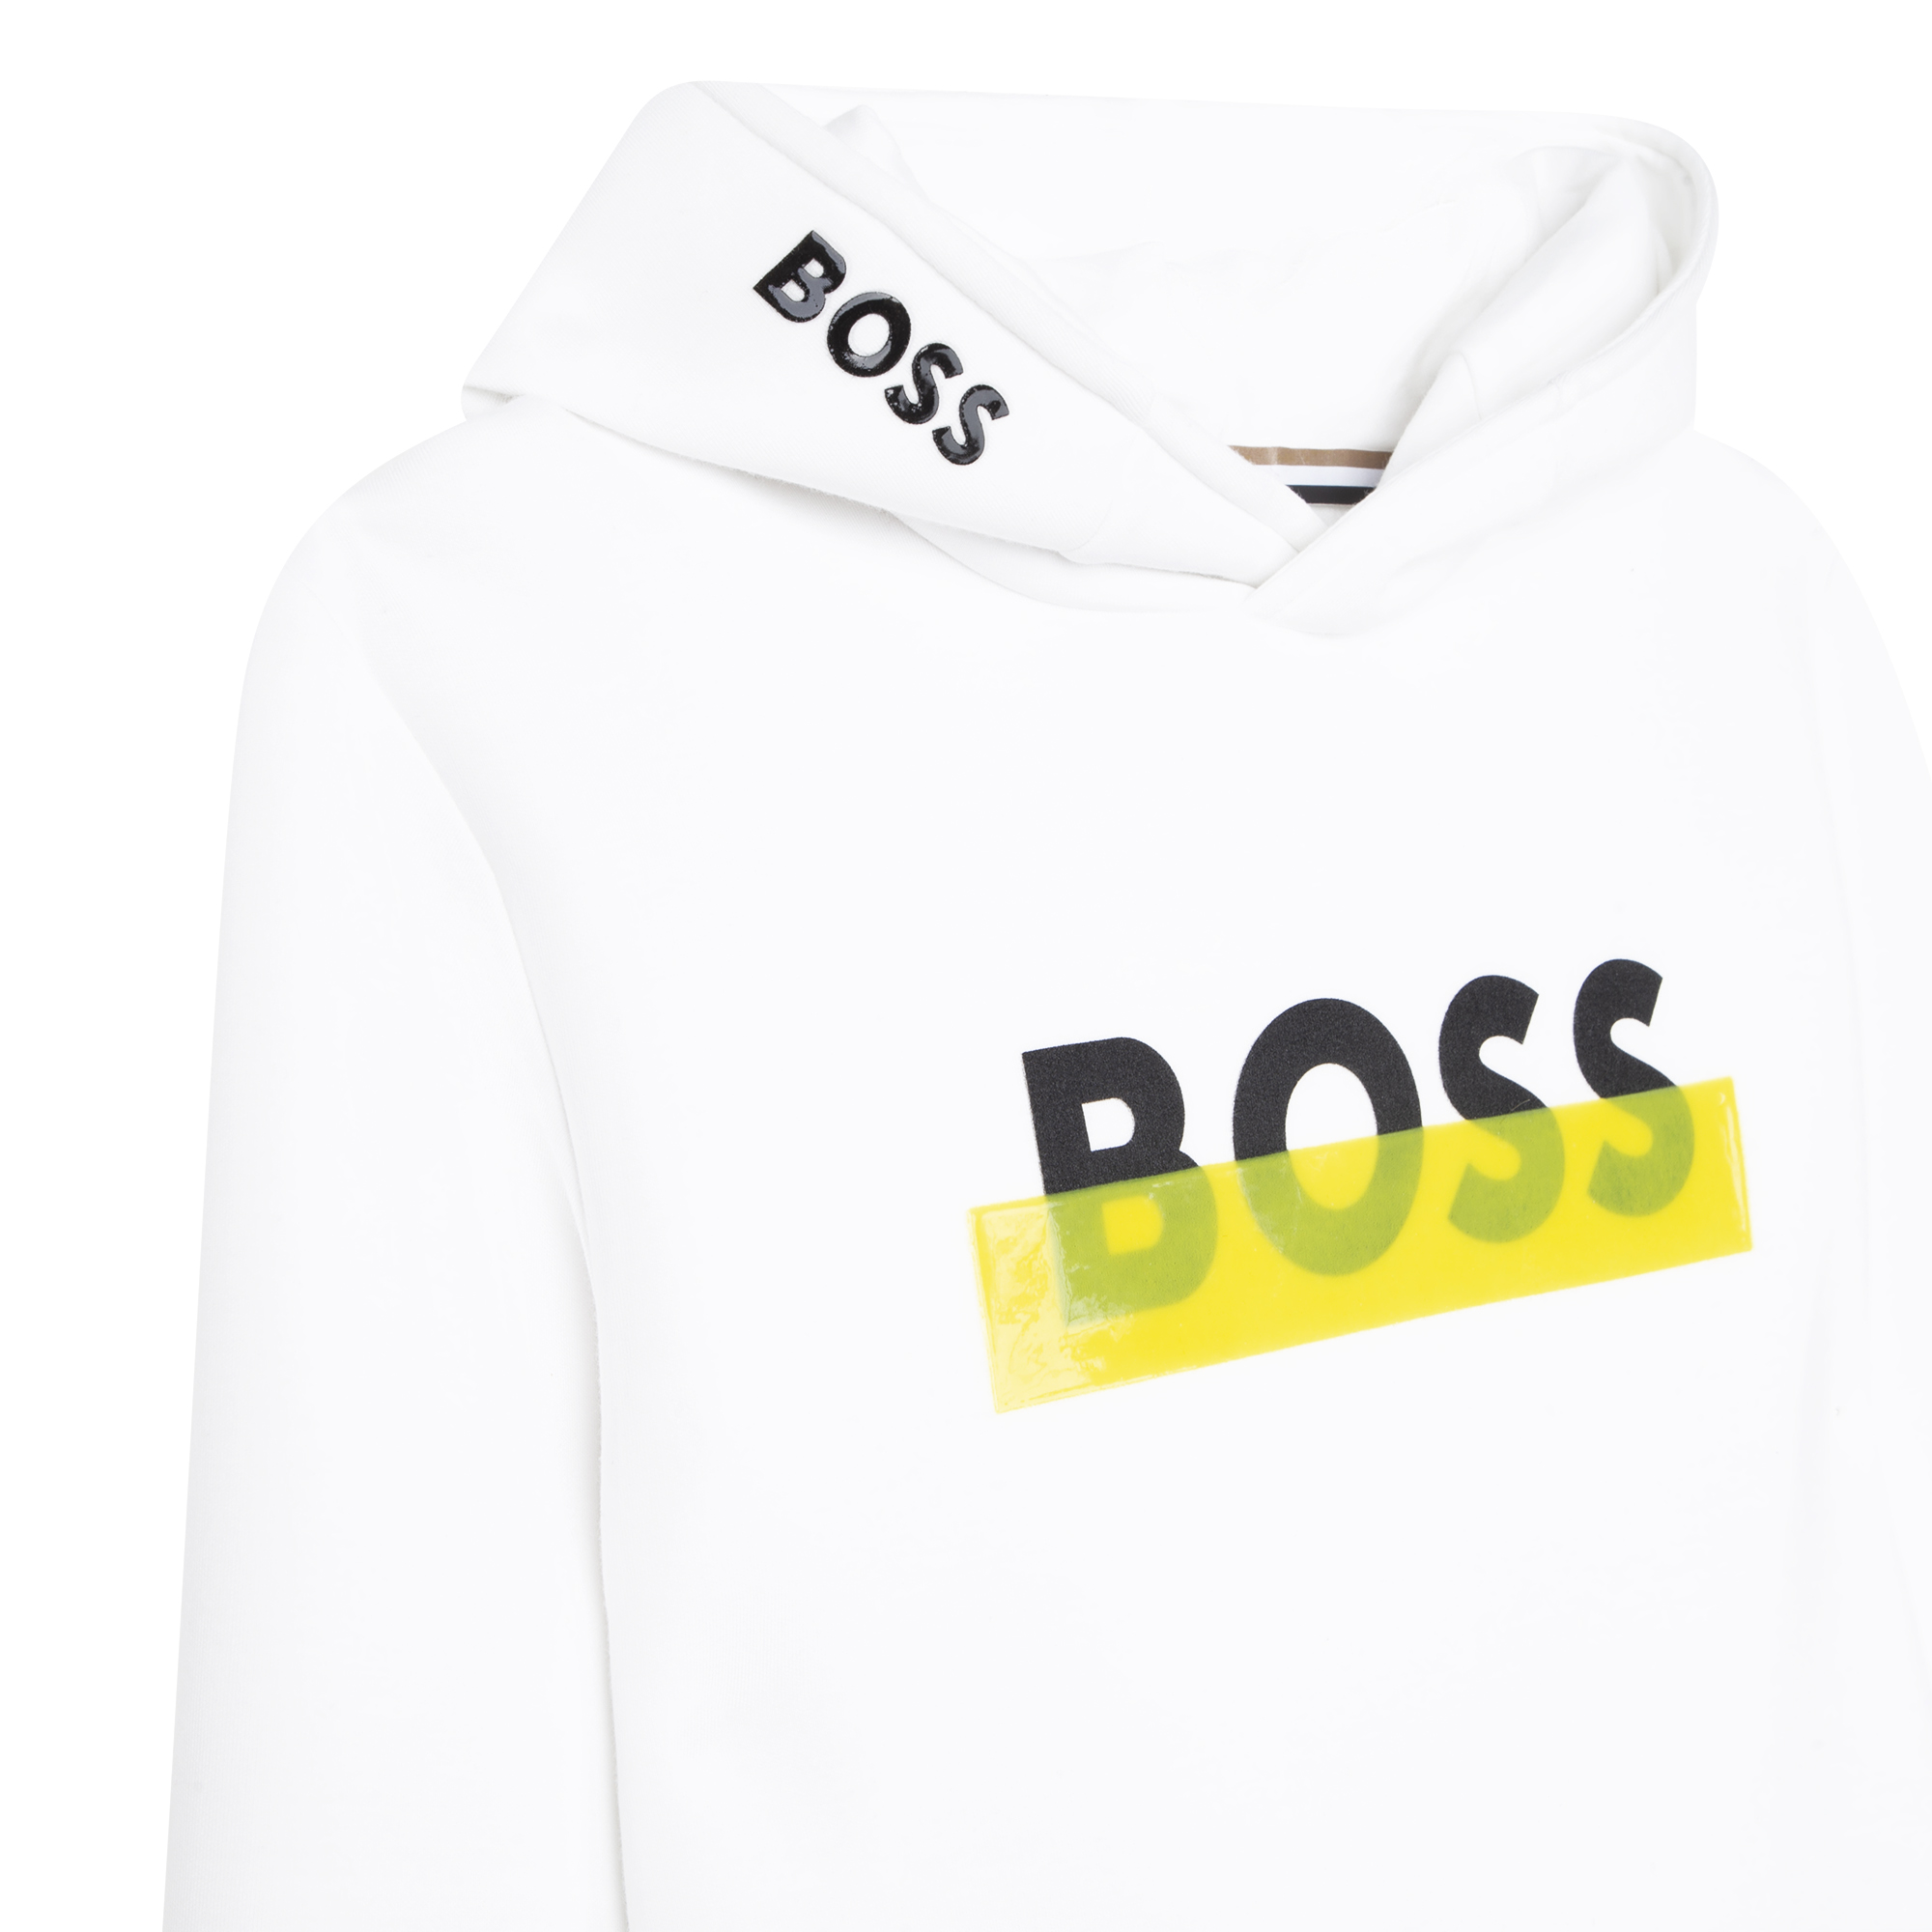 Hooded sweatshirt BOSS for BOY